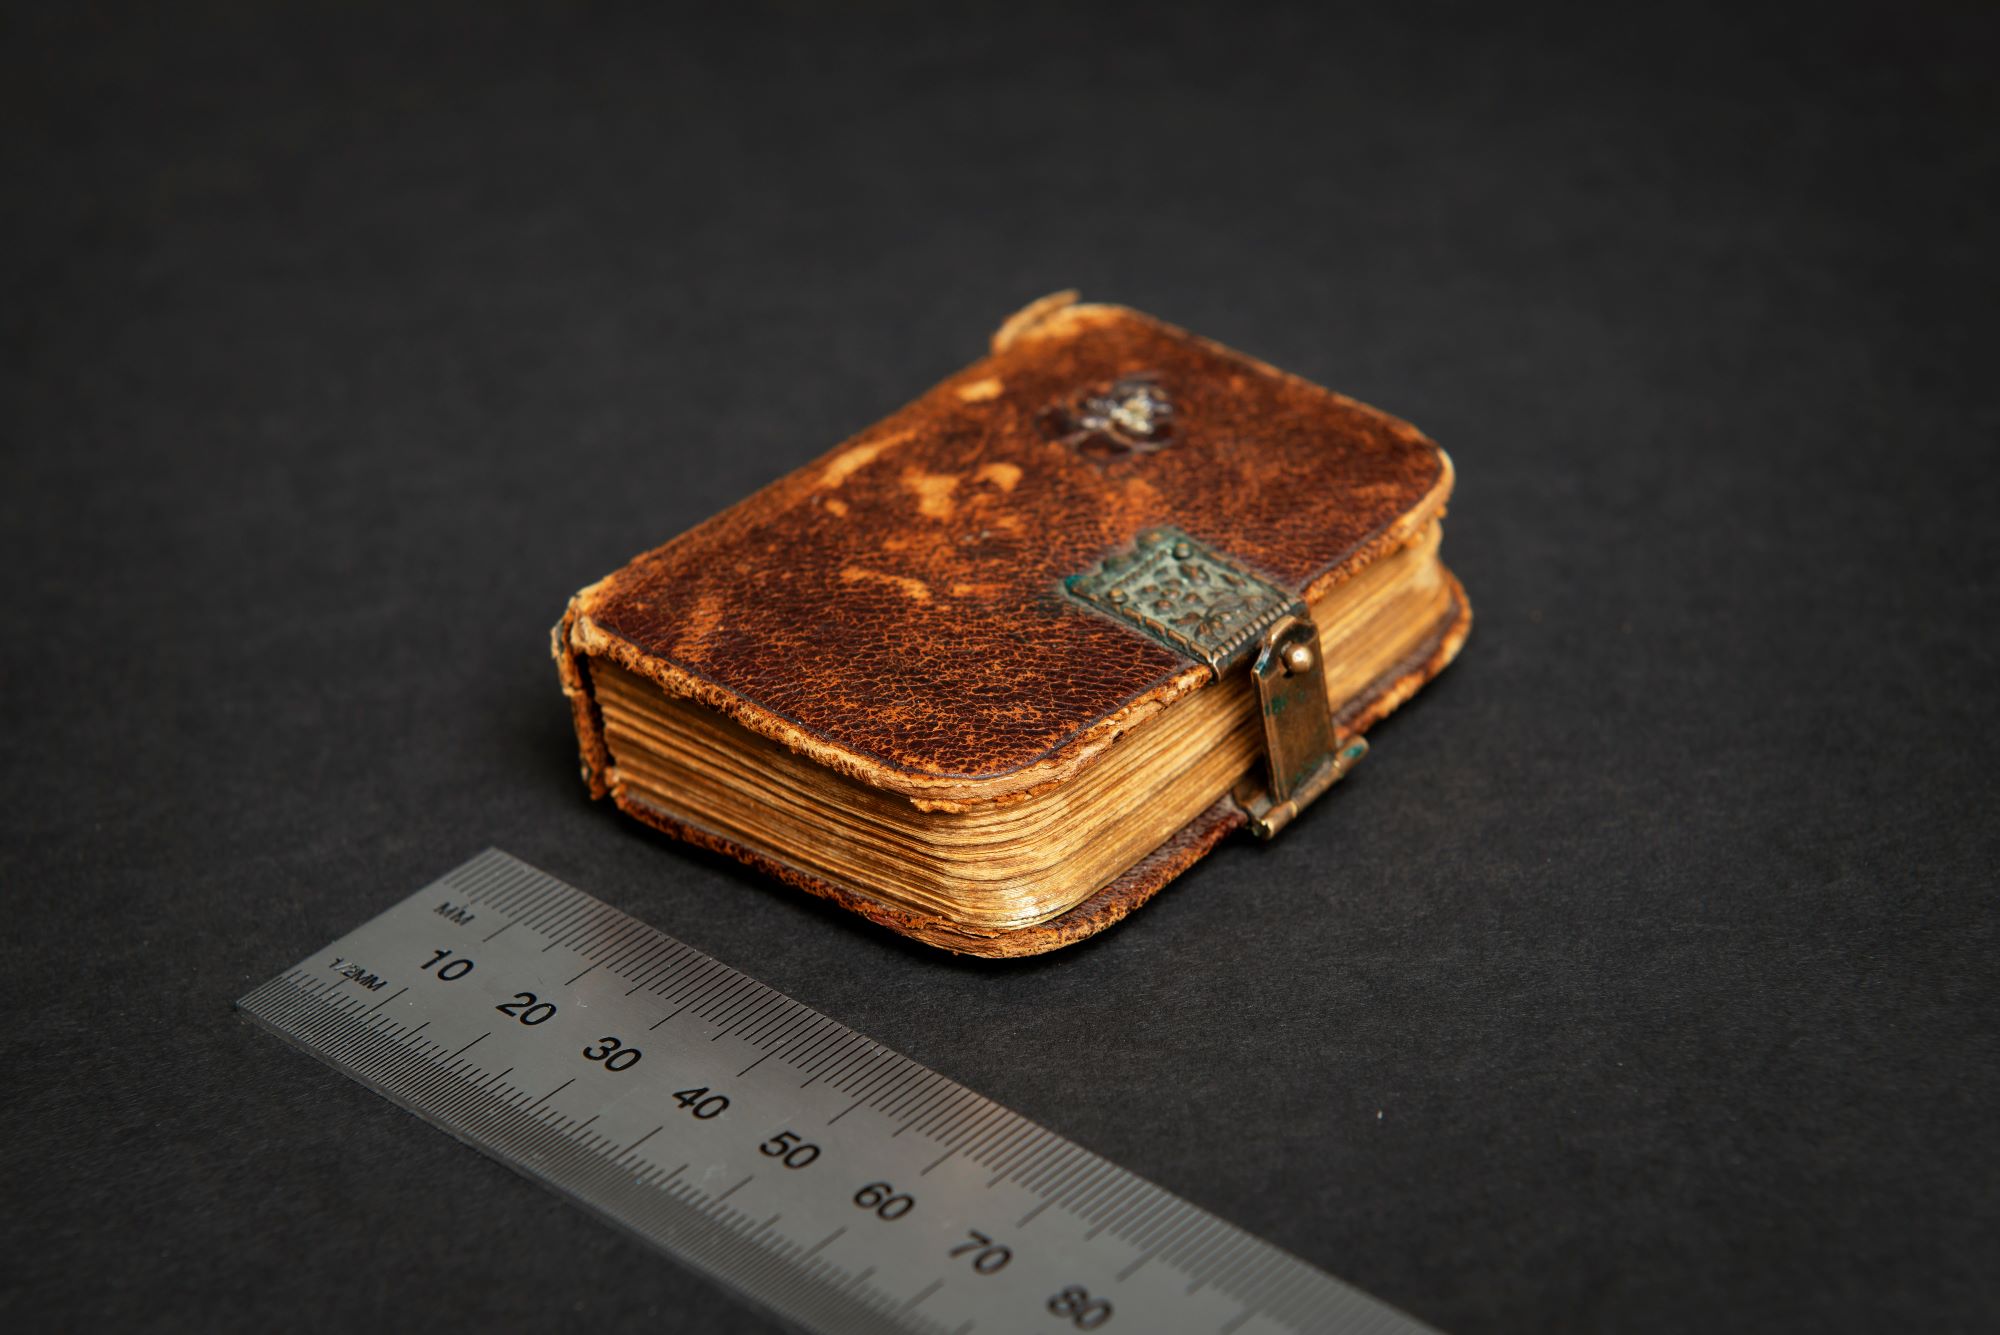 En liten anteckningsbok bunden i brunt läder med ett metallspänne ligger ovanför en linjal, som visar att boken är 5 centimeter bred.